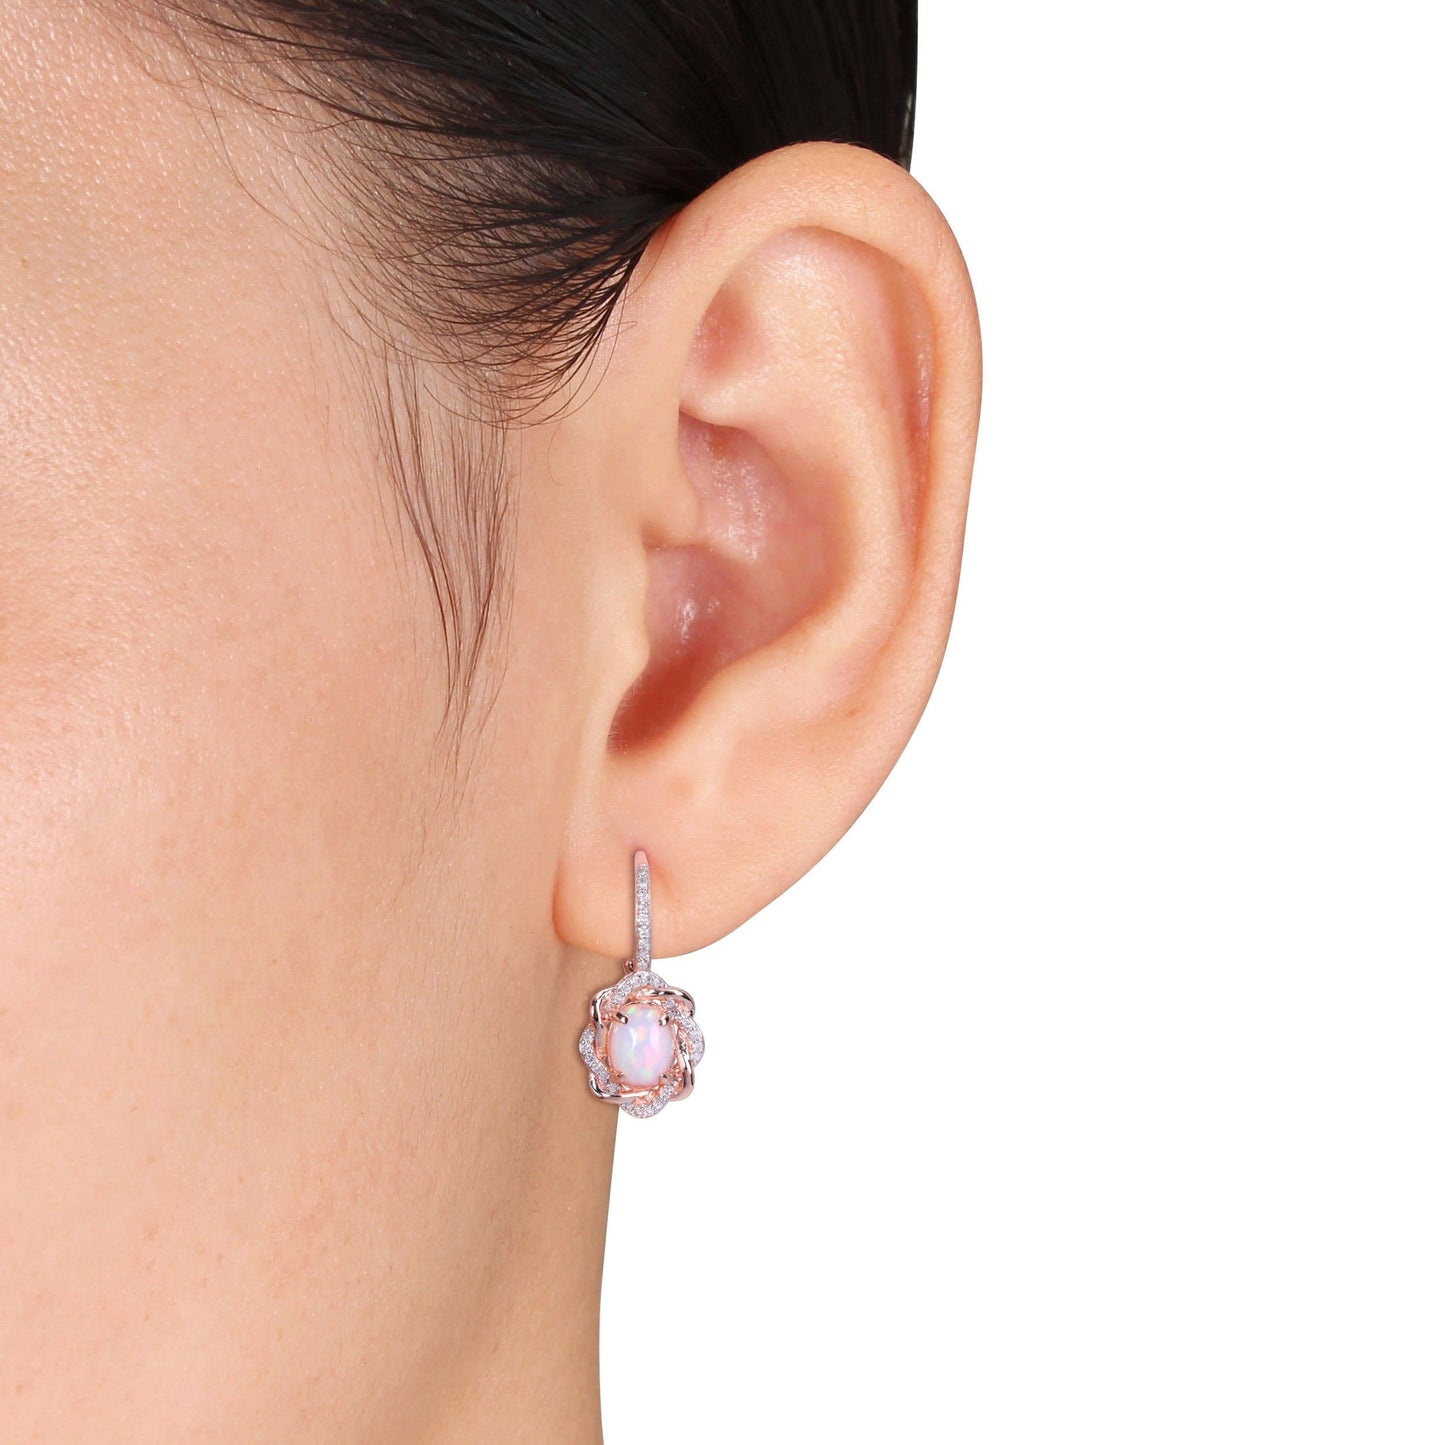 Sophia B Blue Ethiopian Opal & Diamond Halo Earrings in 10k Rose Gold